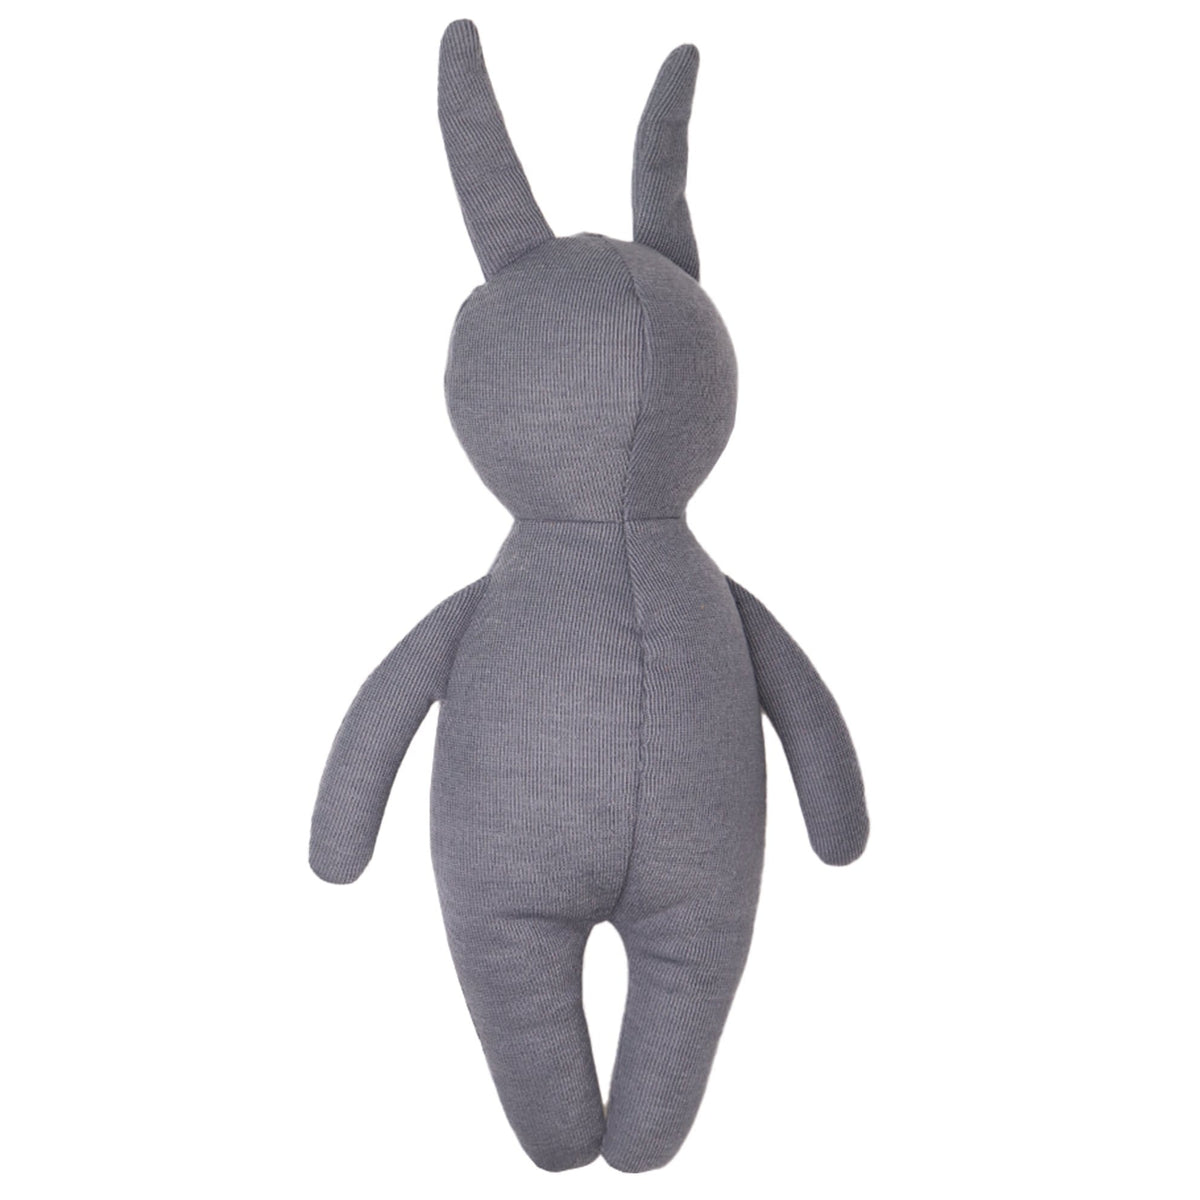 GooseWaddle Plush Bunny Knit Plush